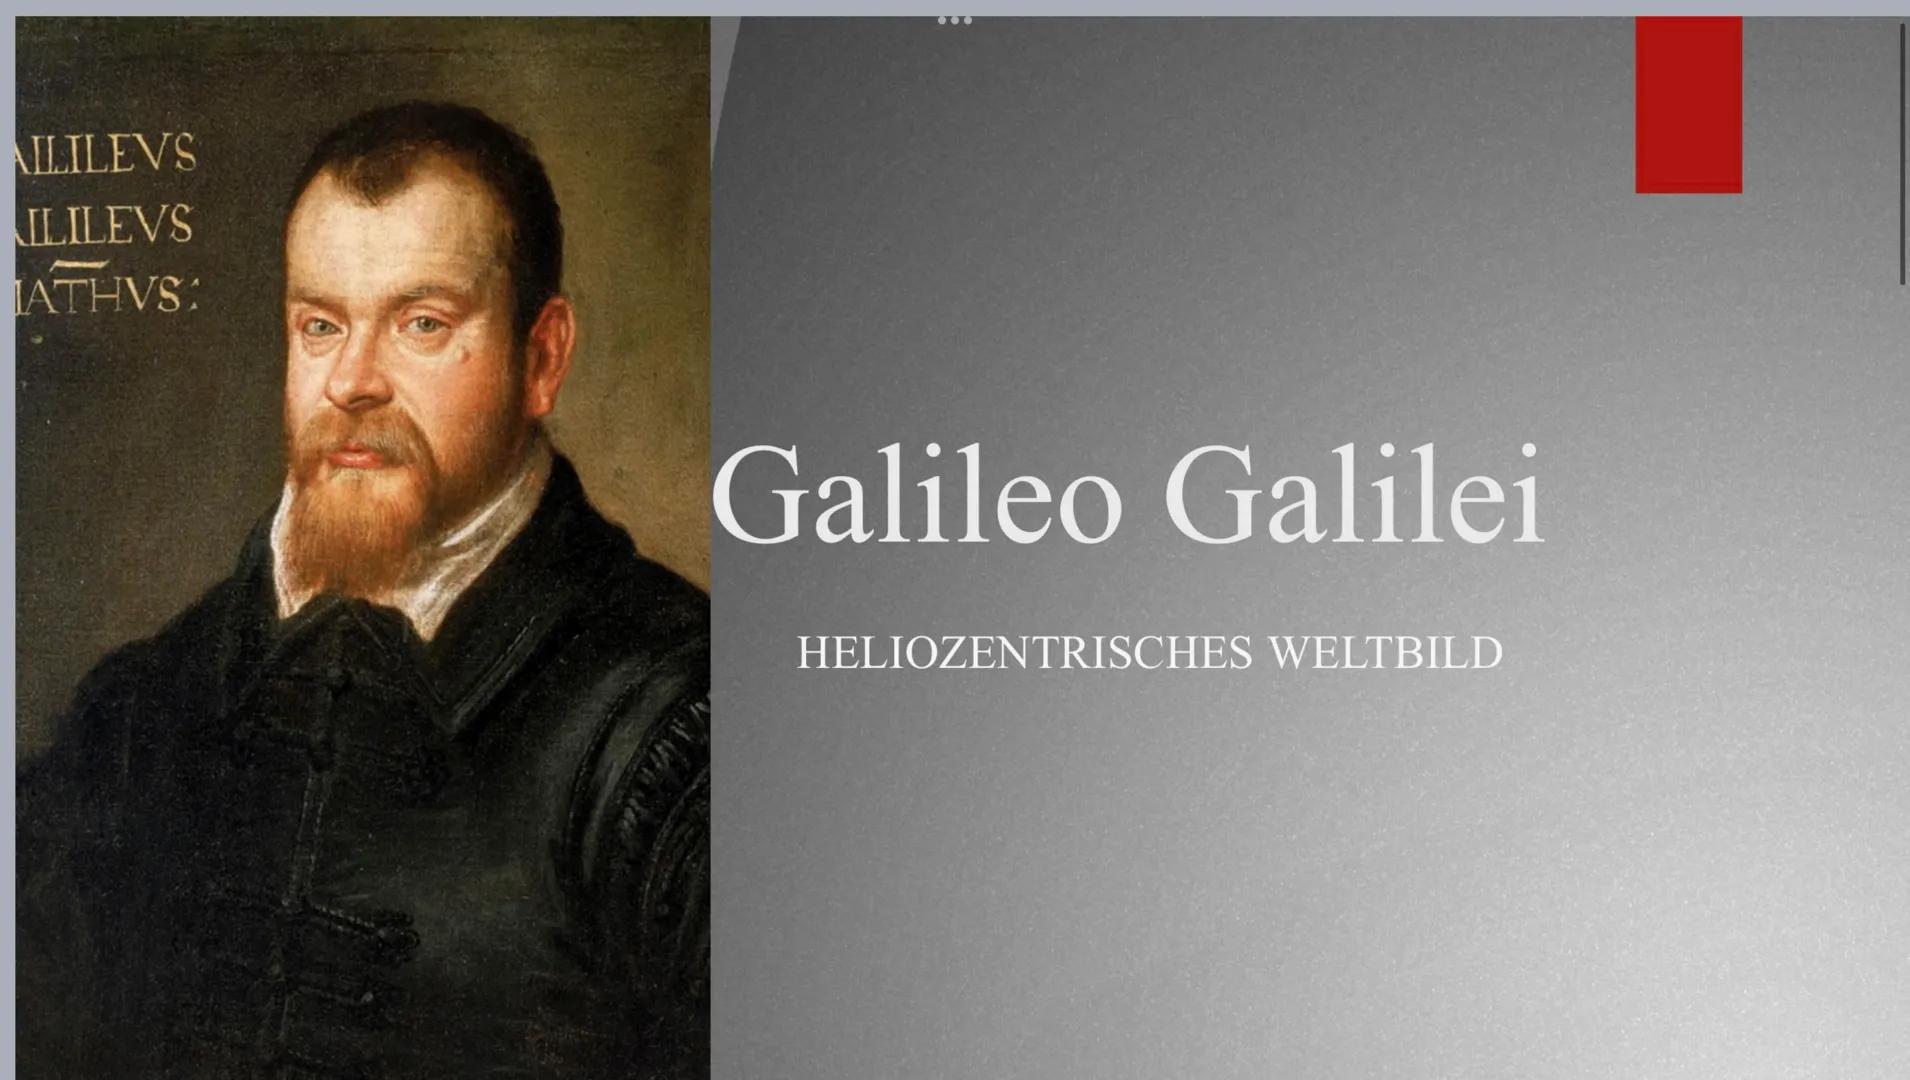 AILILEVS
ILILEVS
ATHVS:
Galileo Galilei
HELIOZENTRISCHES WELTBILD Steckbrief
●
●
*15 Februar 1564; † 29 Dezember 1641
Nationalität : italien